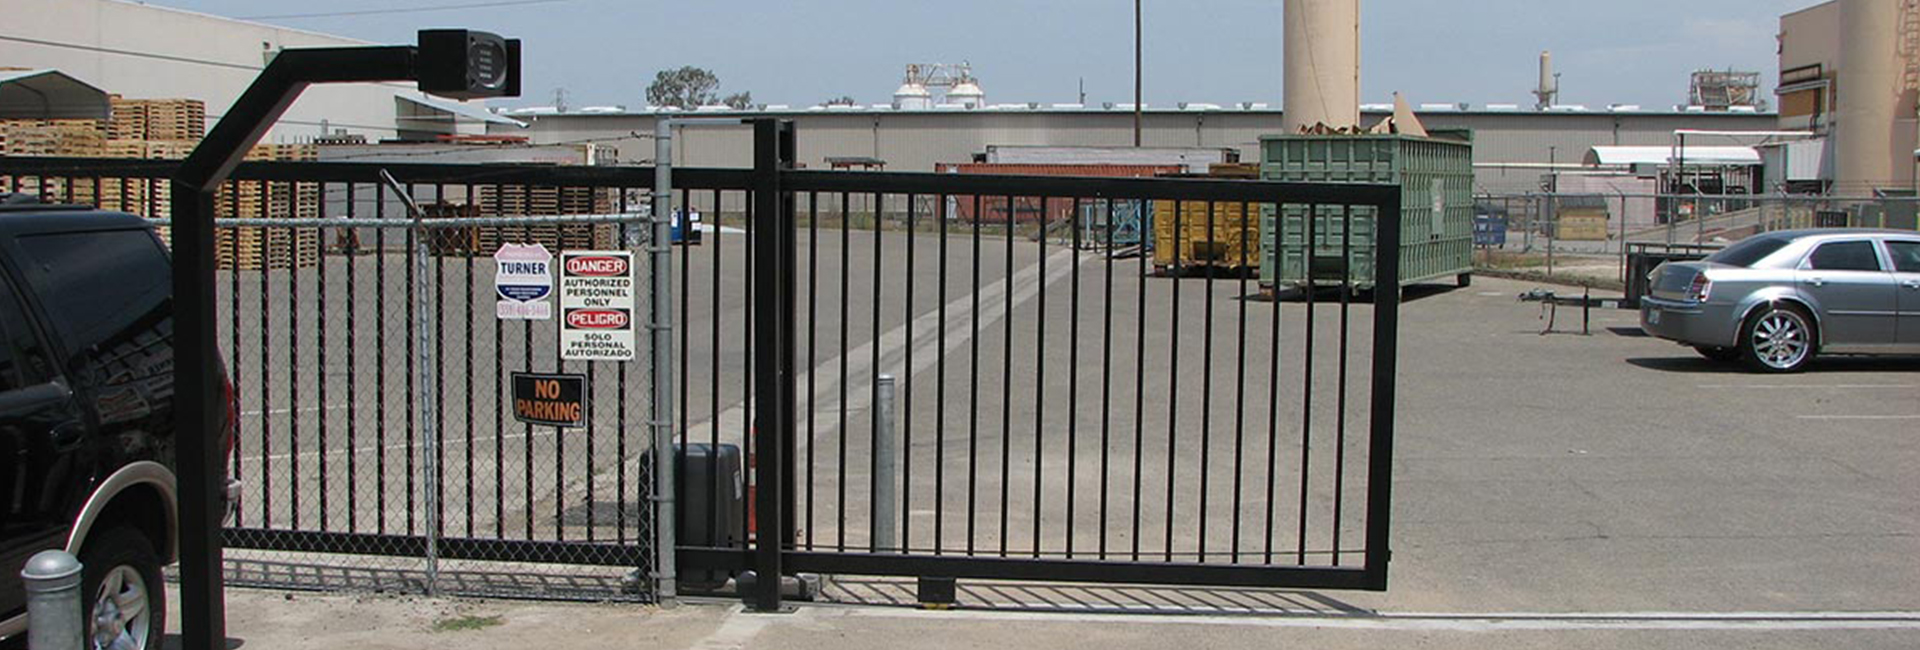 Gate entry erp module